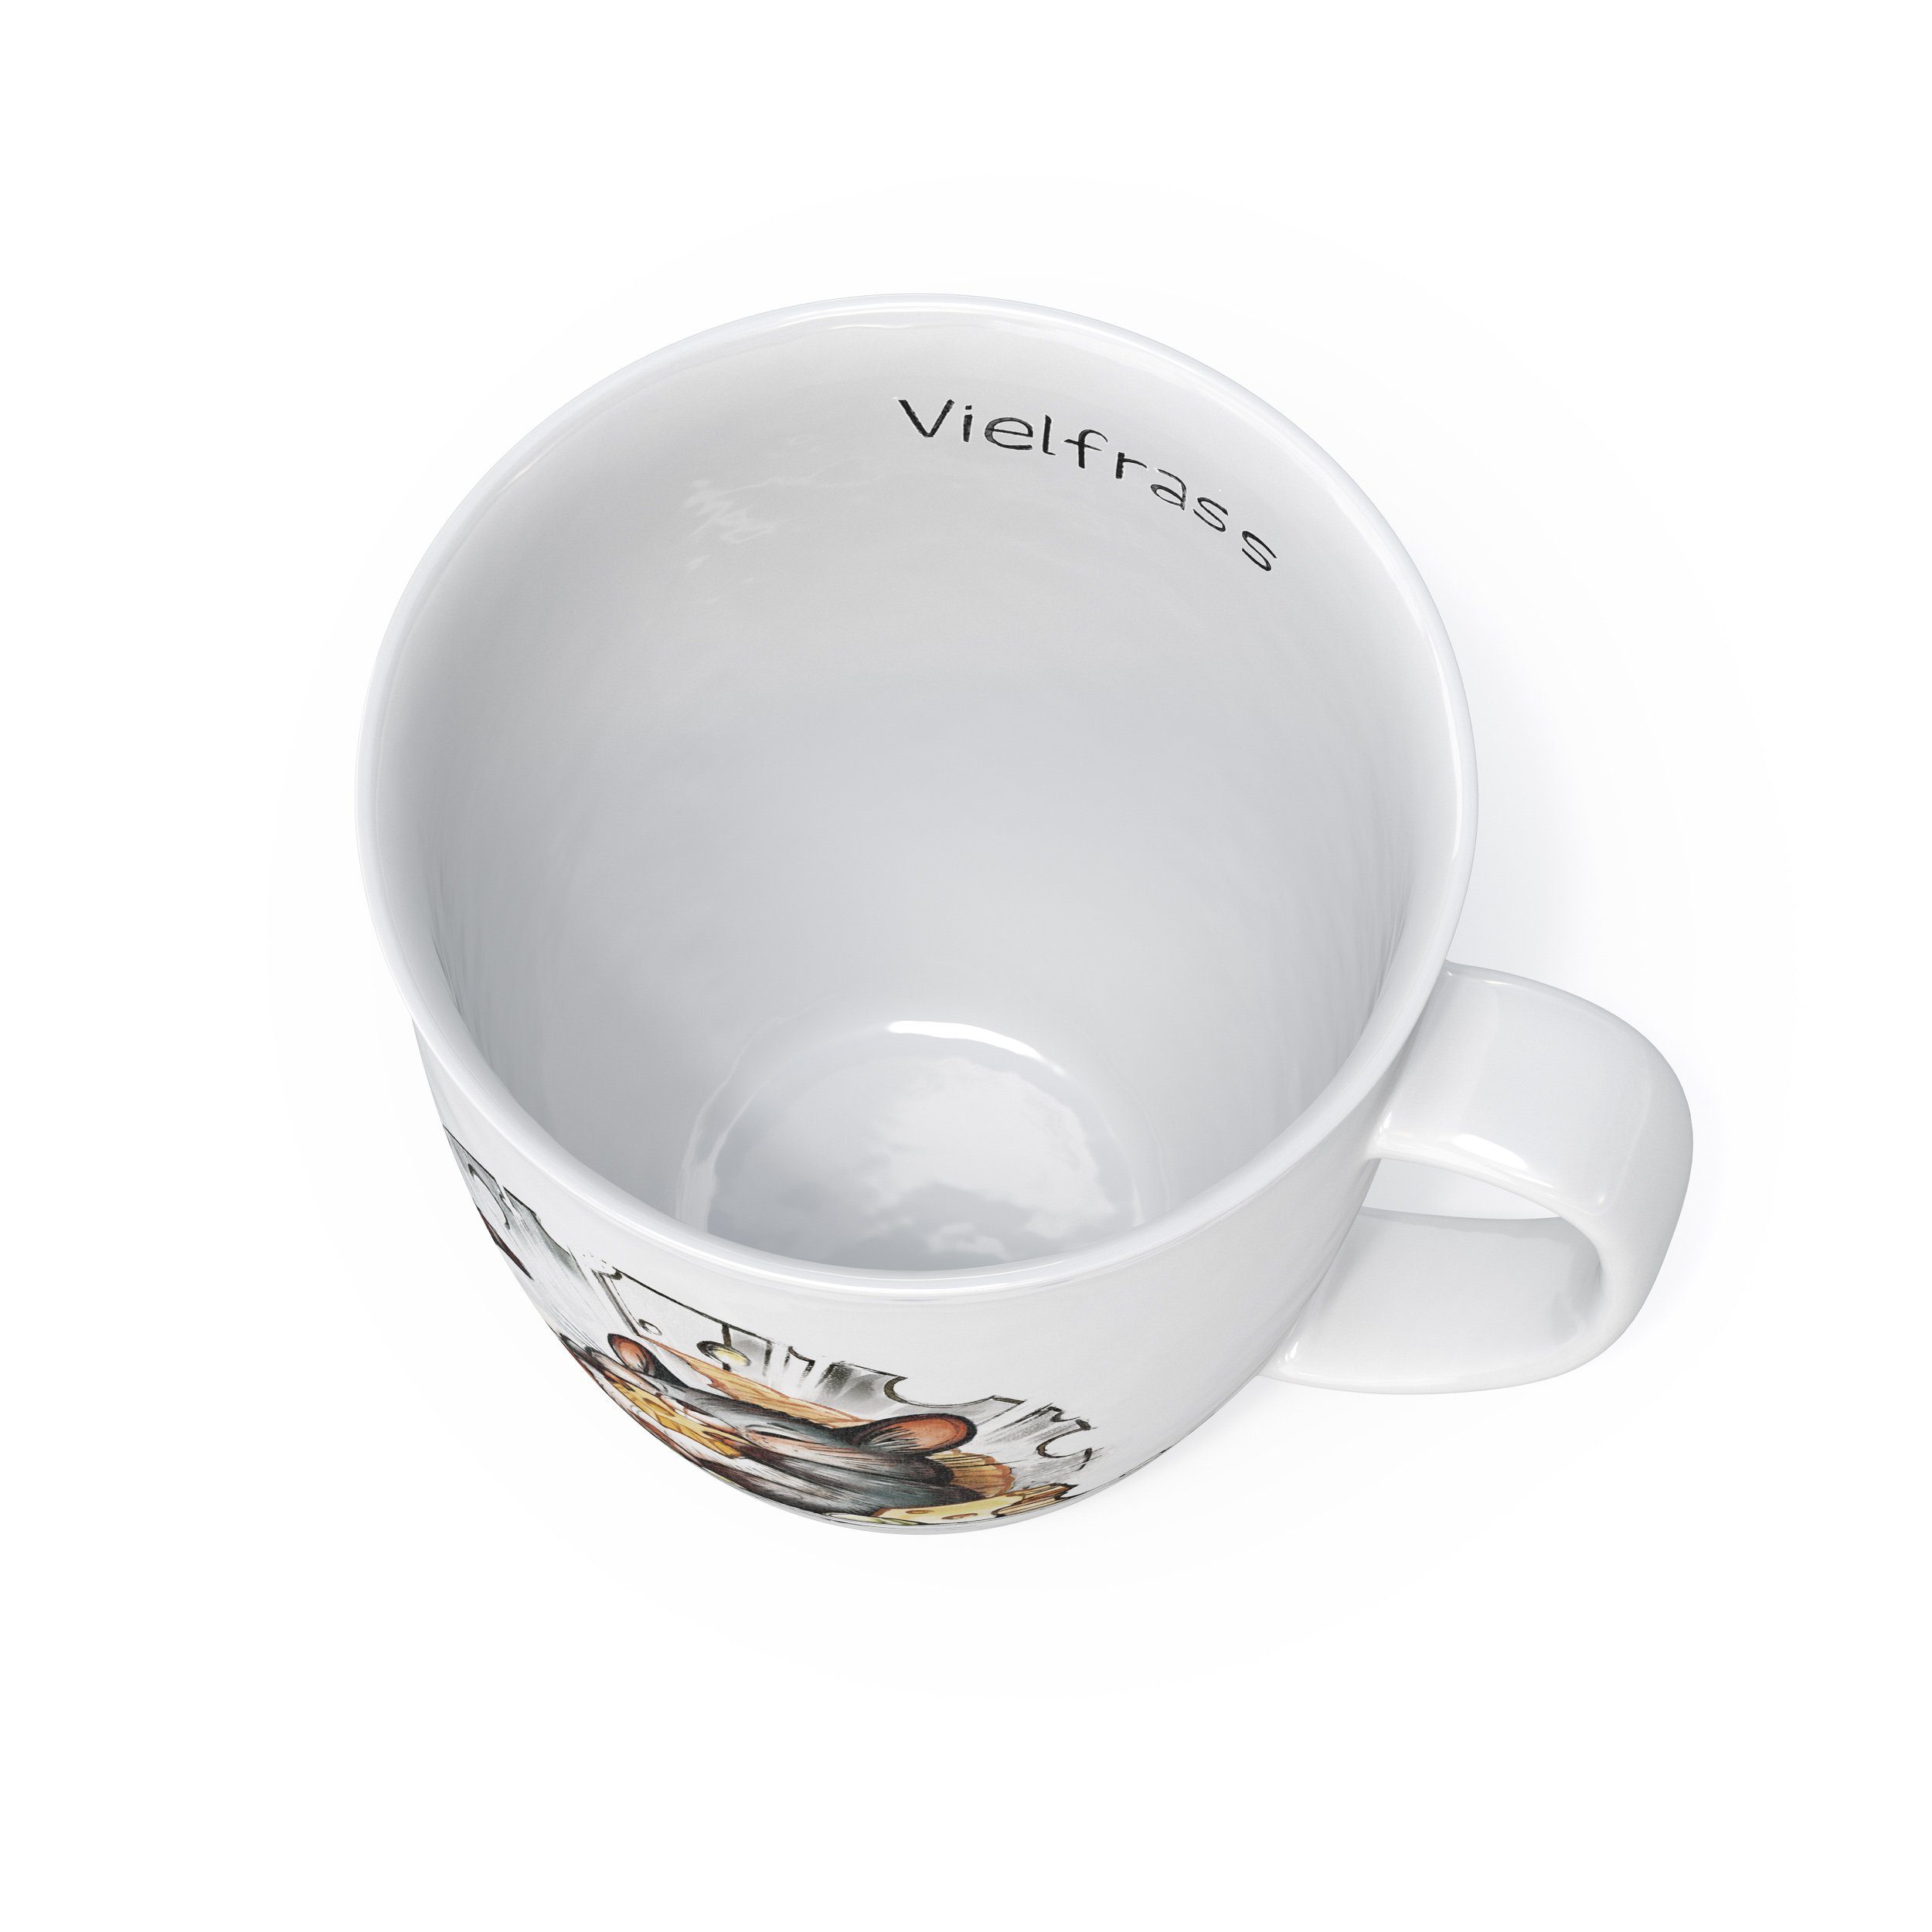 für Motiv, Vielfraß Motiv Becher Kaffee Porzellan, Tee mit L.E.R.D.93 Maus Tasse mit Kaffeebecher